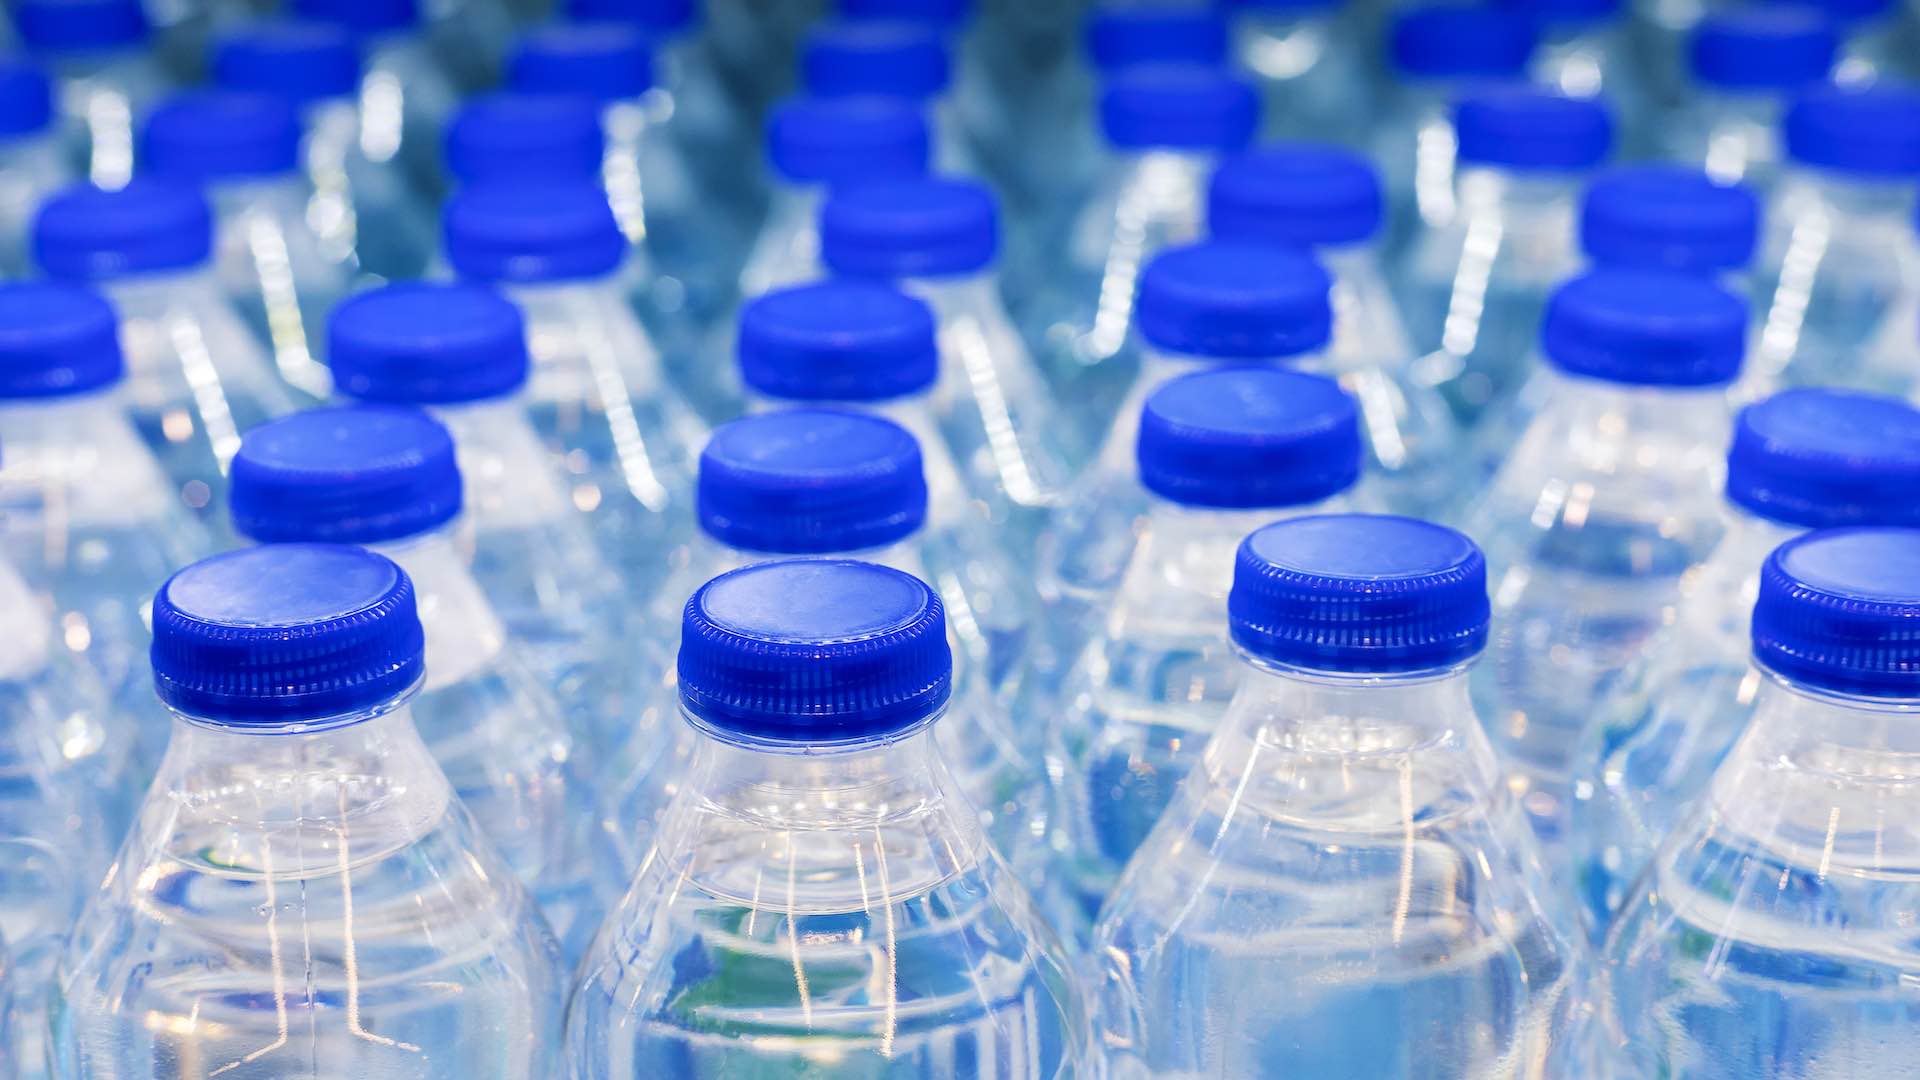 हाल के नैनोप्लास्टिक निष्कर्षों के बाद बोतलबंद पानी की सुरक्षा जांच के दायरे में है